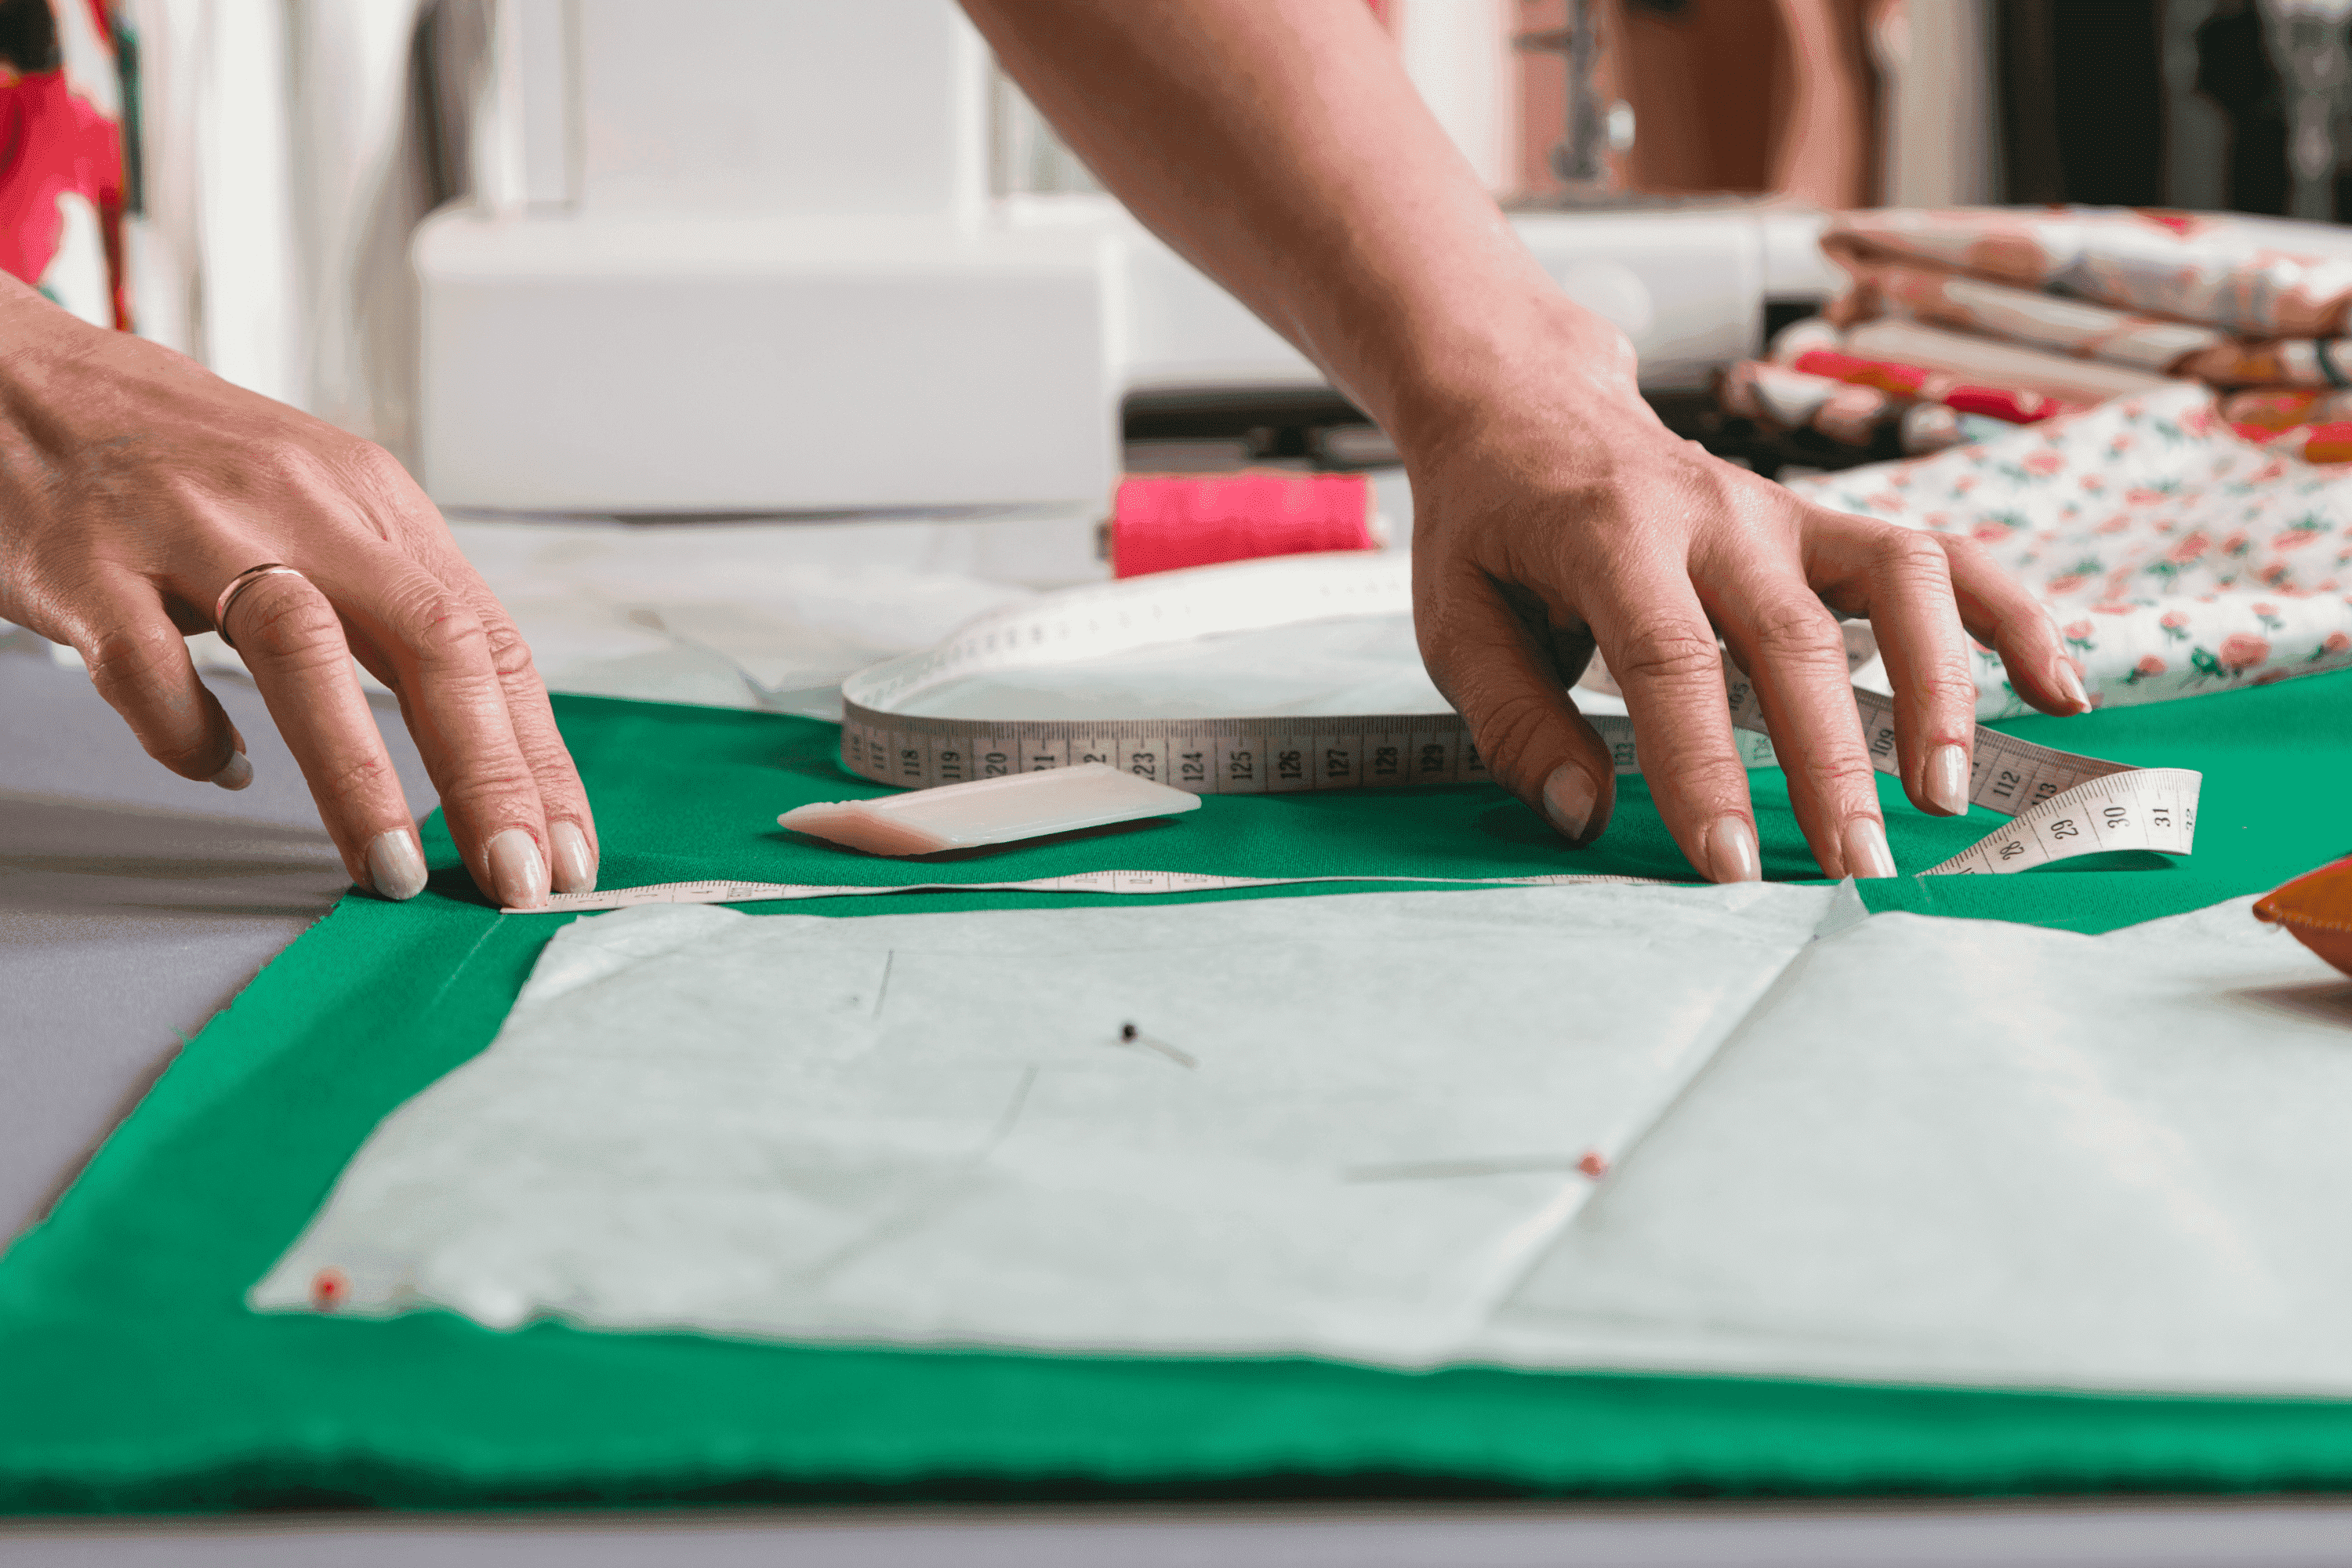 Cómo elegir el papel para molde de costura más adecuado